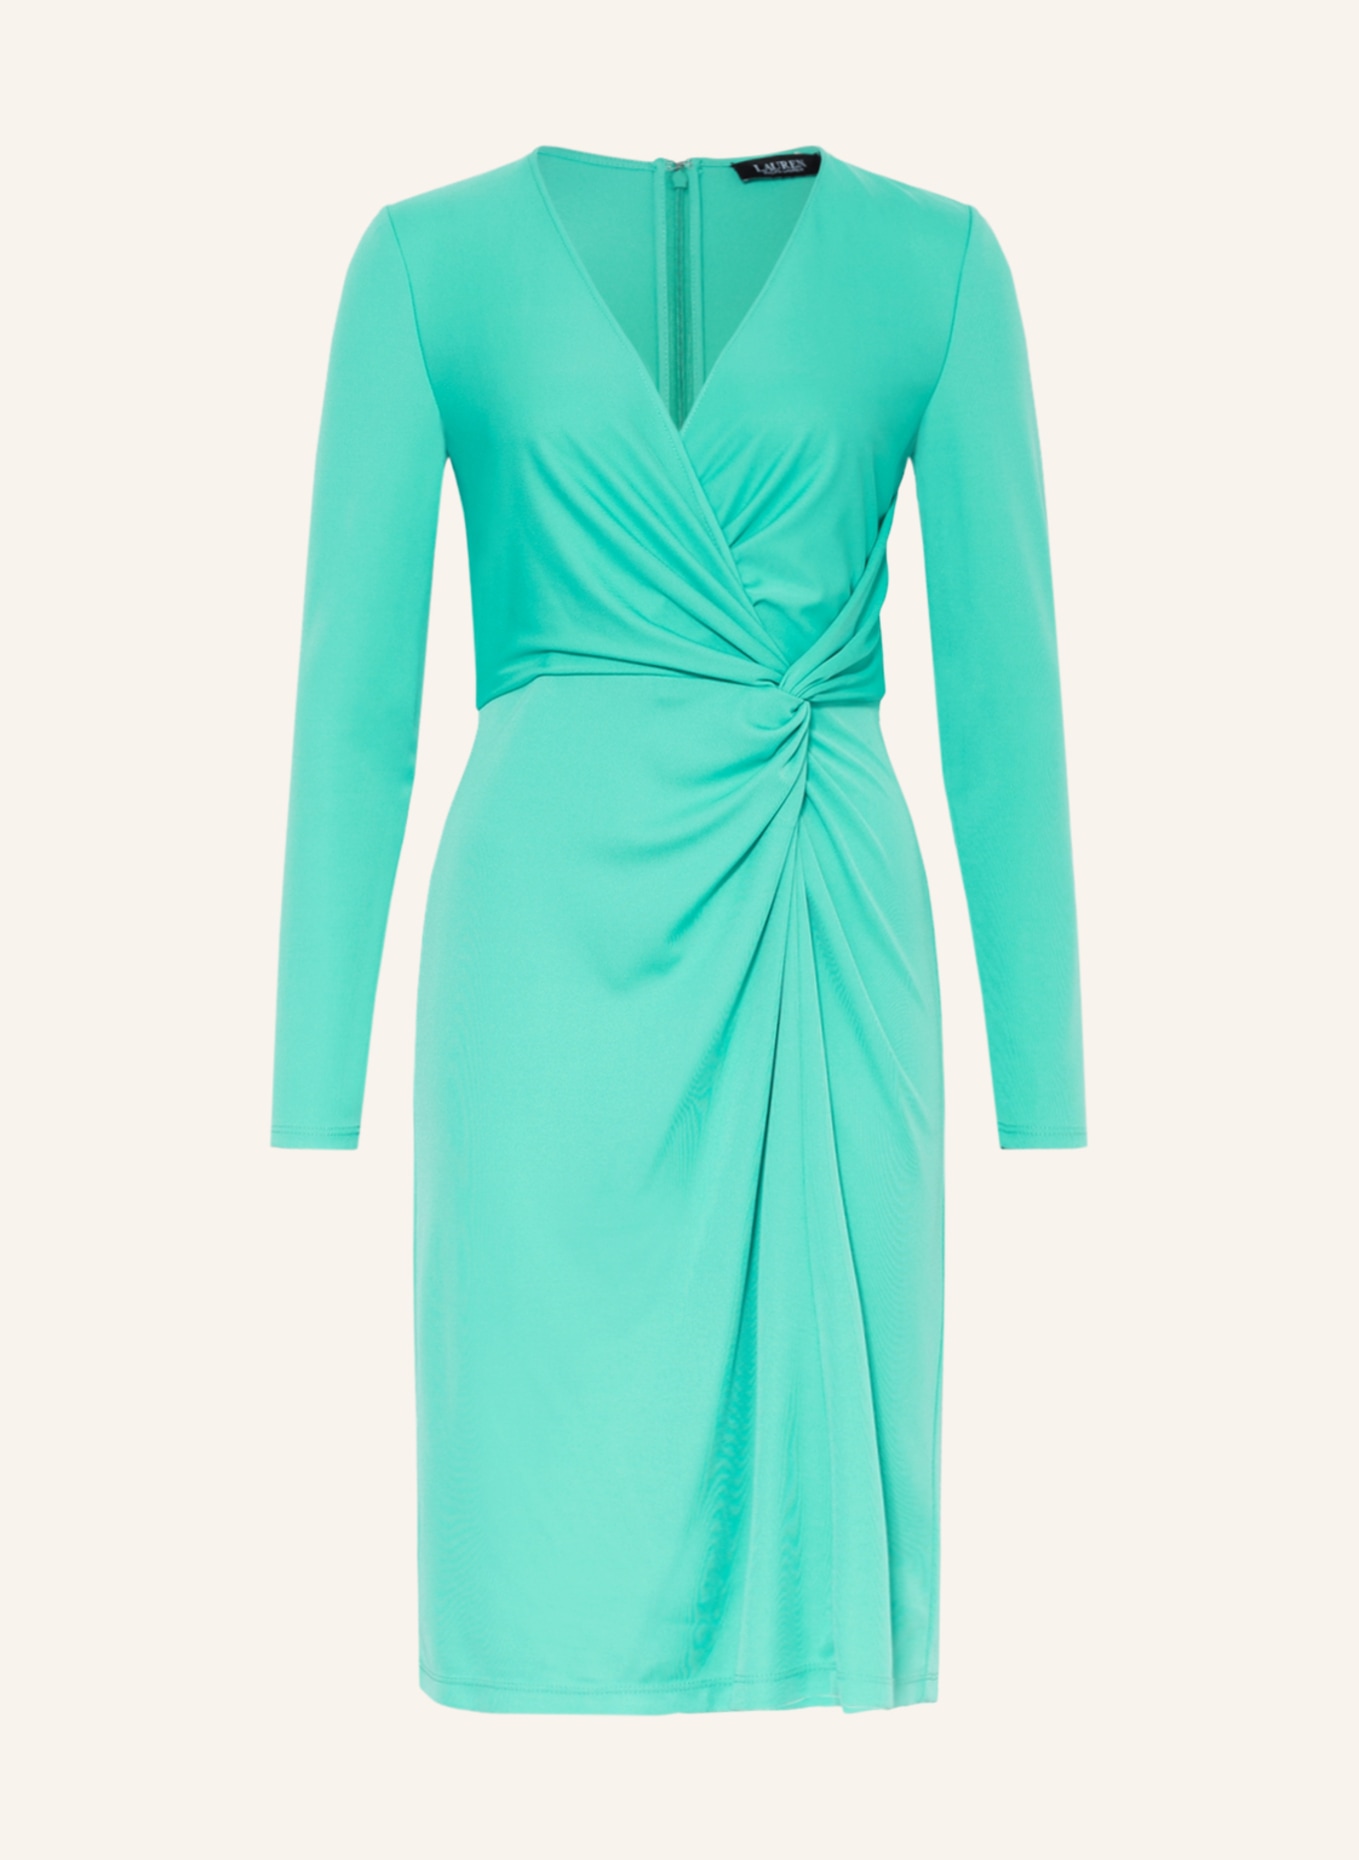 LAUREN RALPH LAUREN Dress in wrap look, Color: MINT (Image 1)